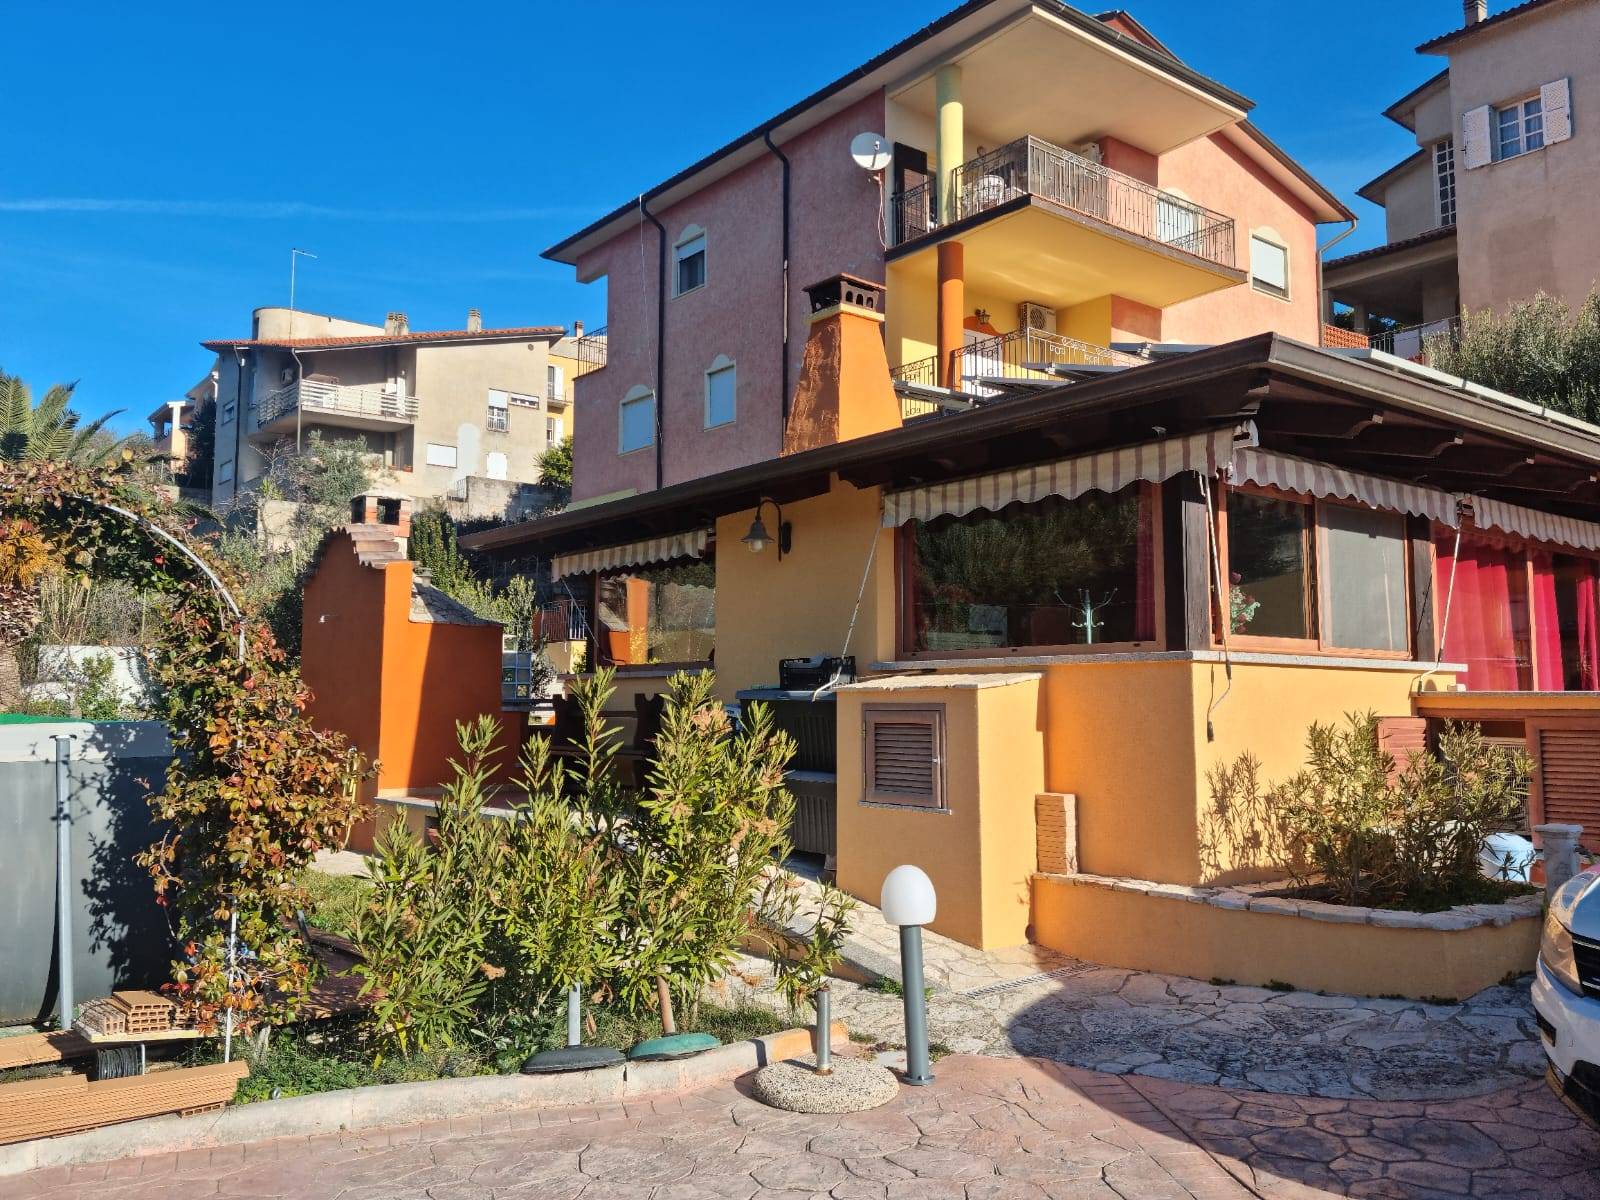 Villa Bifamiliare in vendita a Ozieri, 12 locali, prezzo € 480.000 | PortaleAgenzieImmobiliari.it